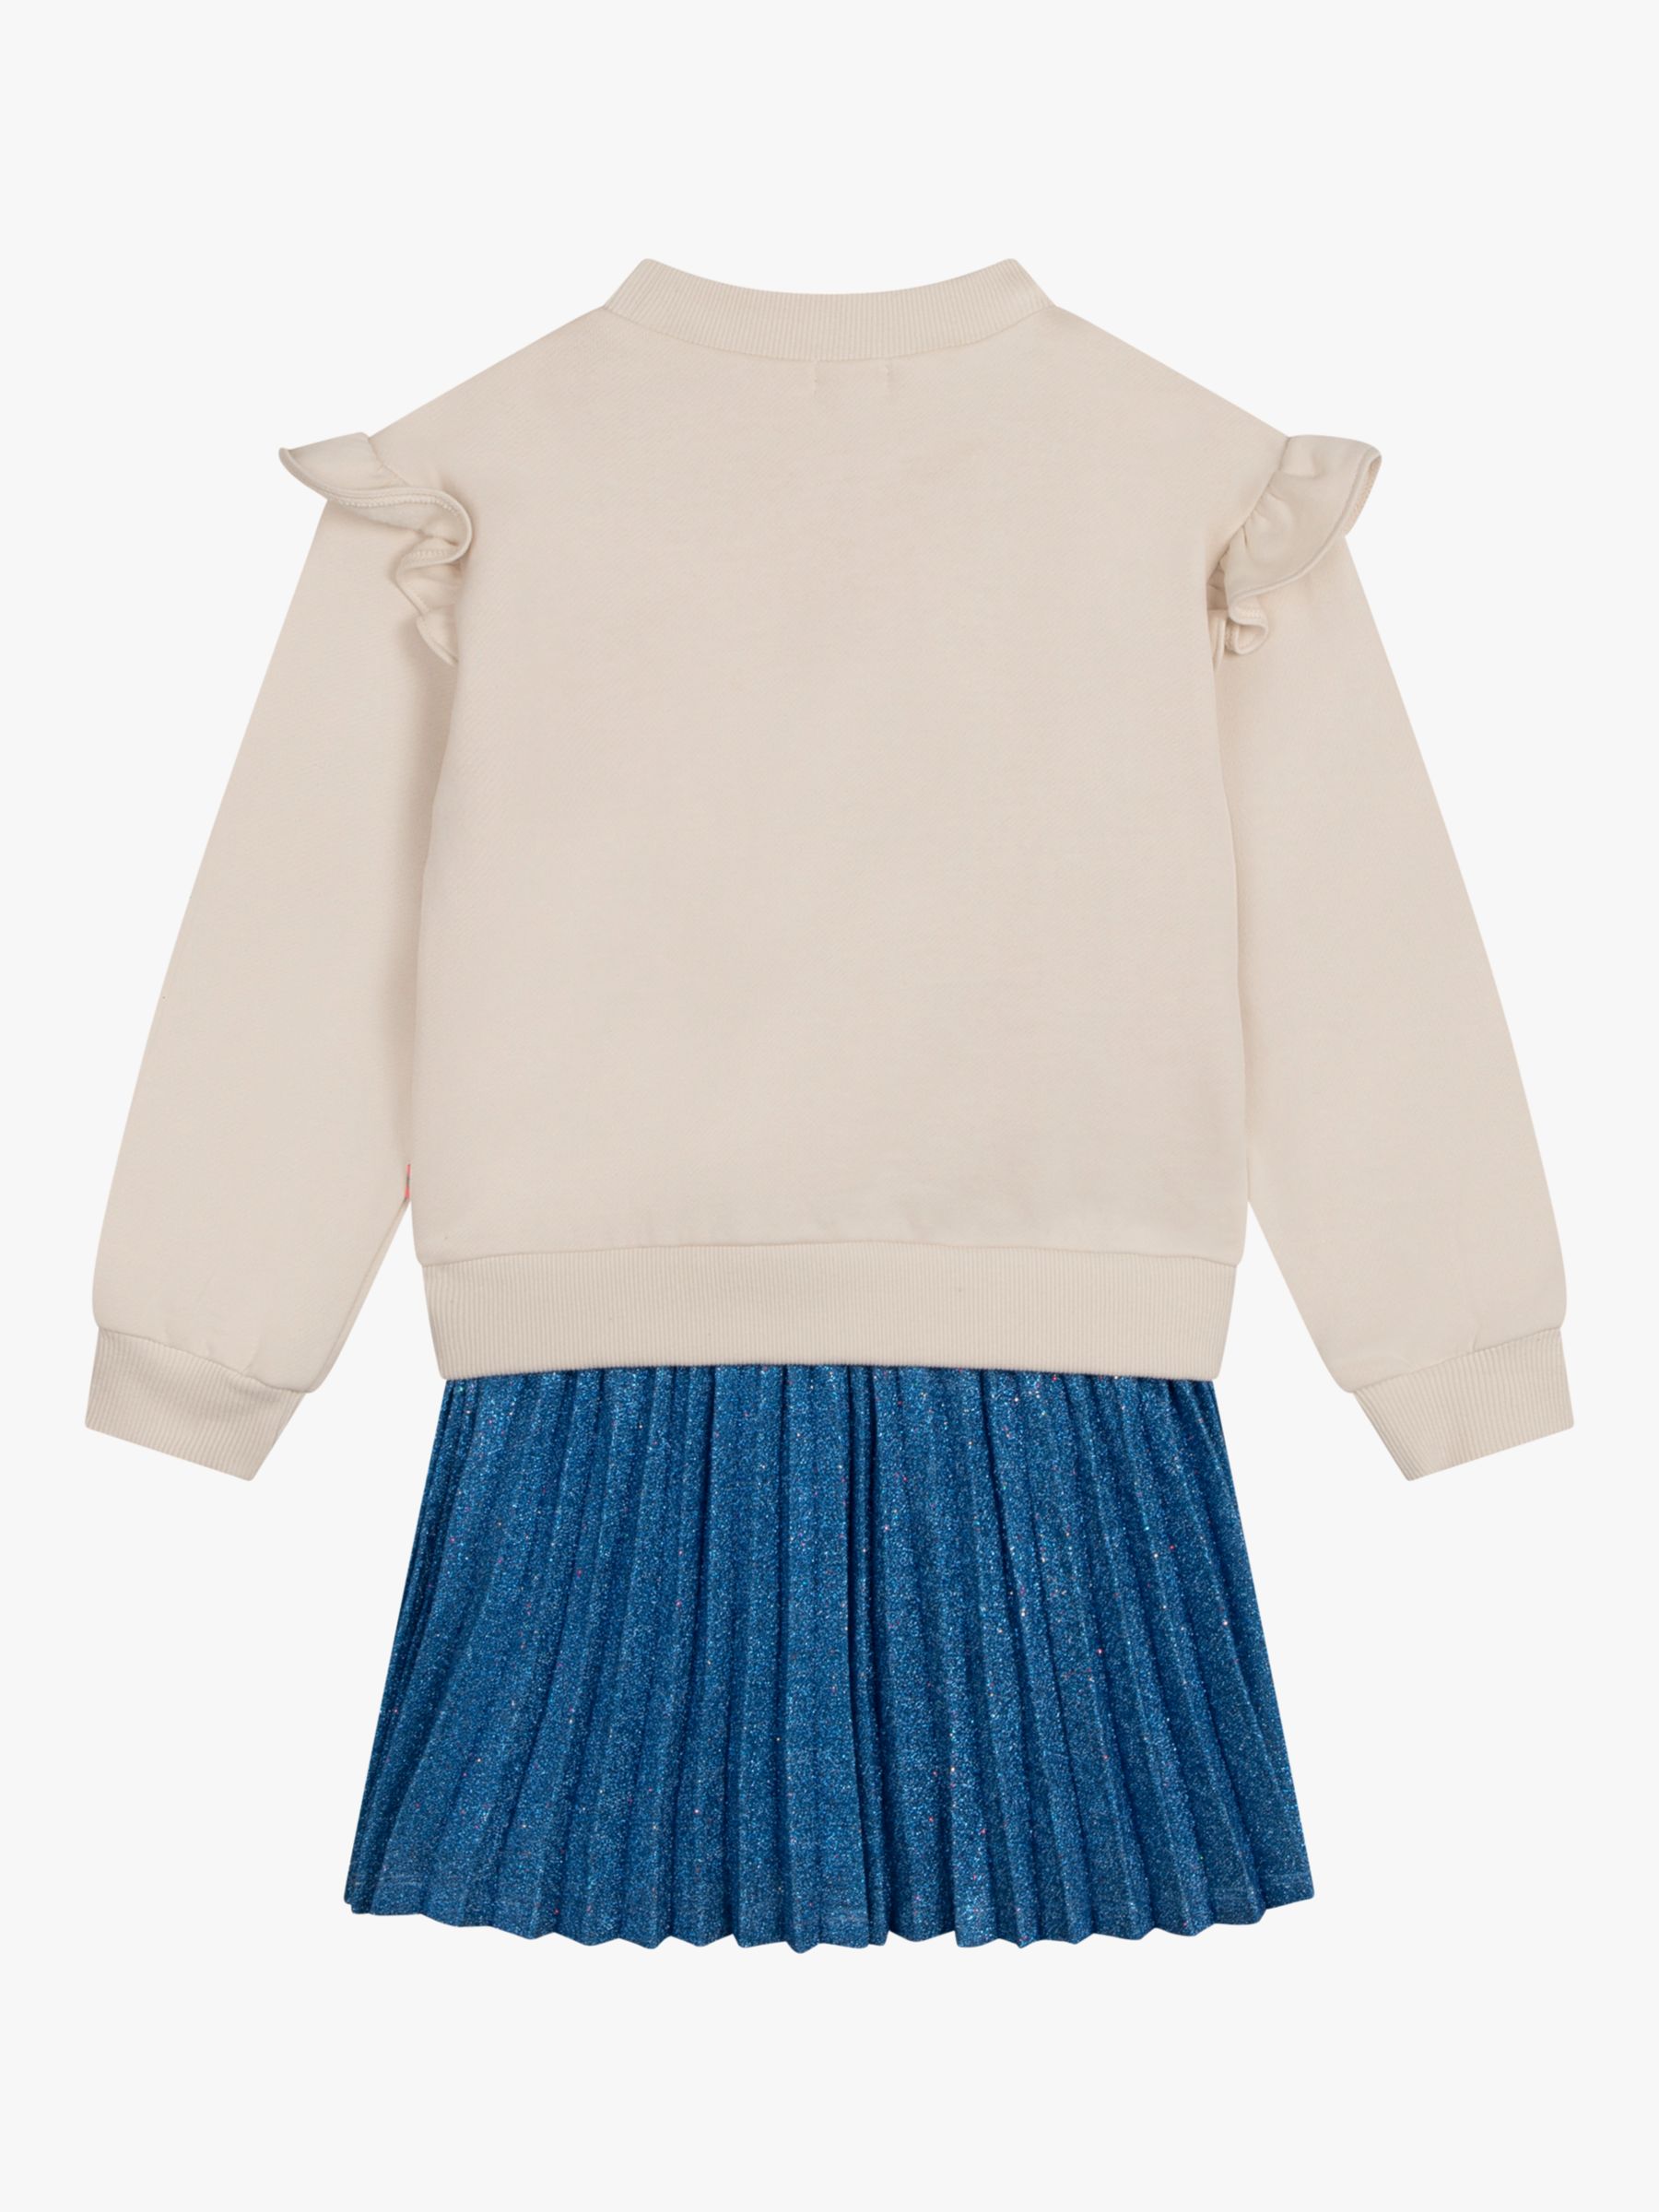 Buy Billieblush Kids' Love Jumper Skirt Dress, Multi Online at johnlewis.com